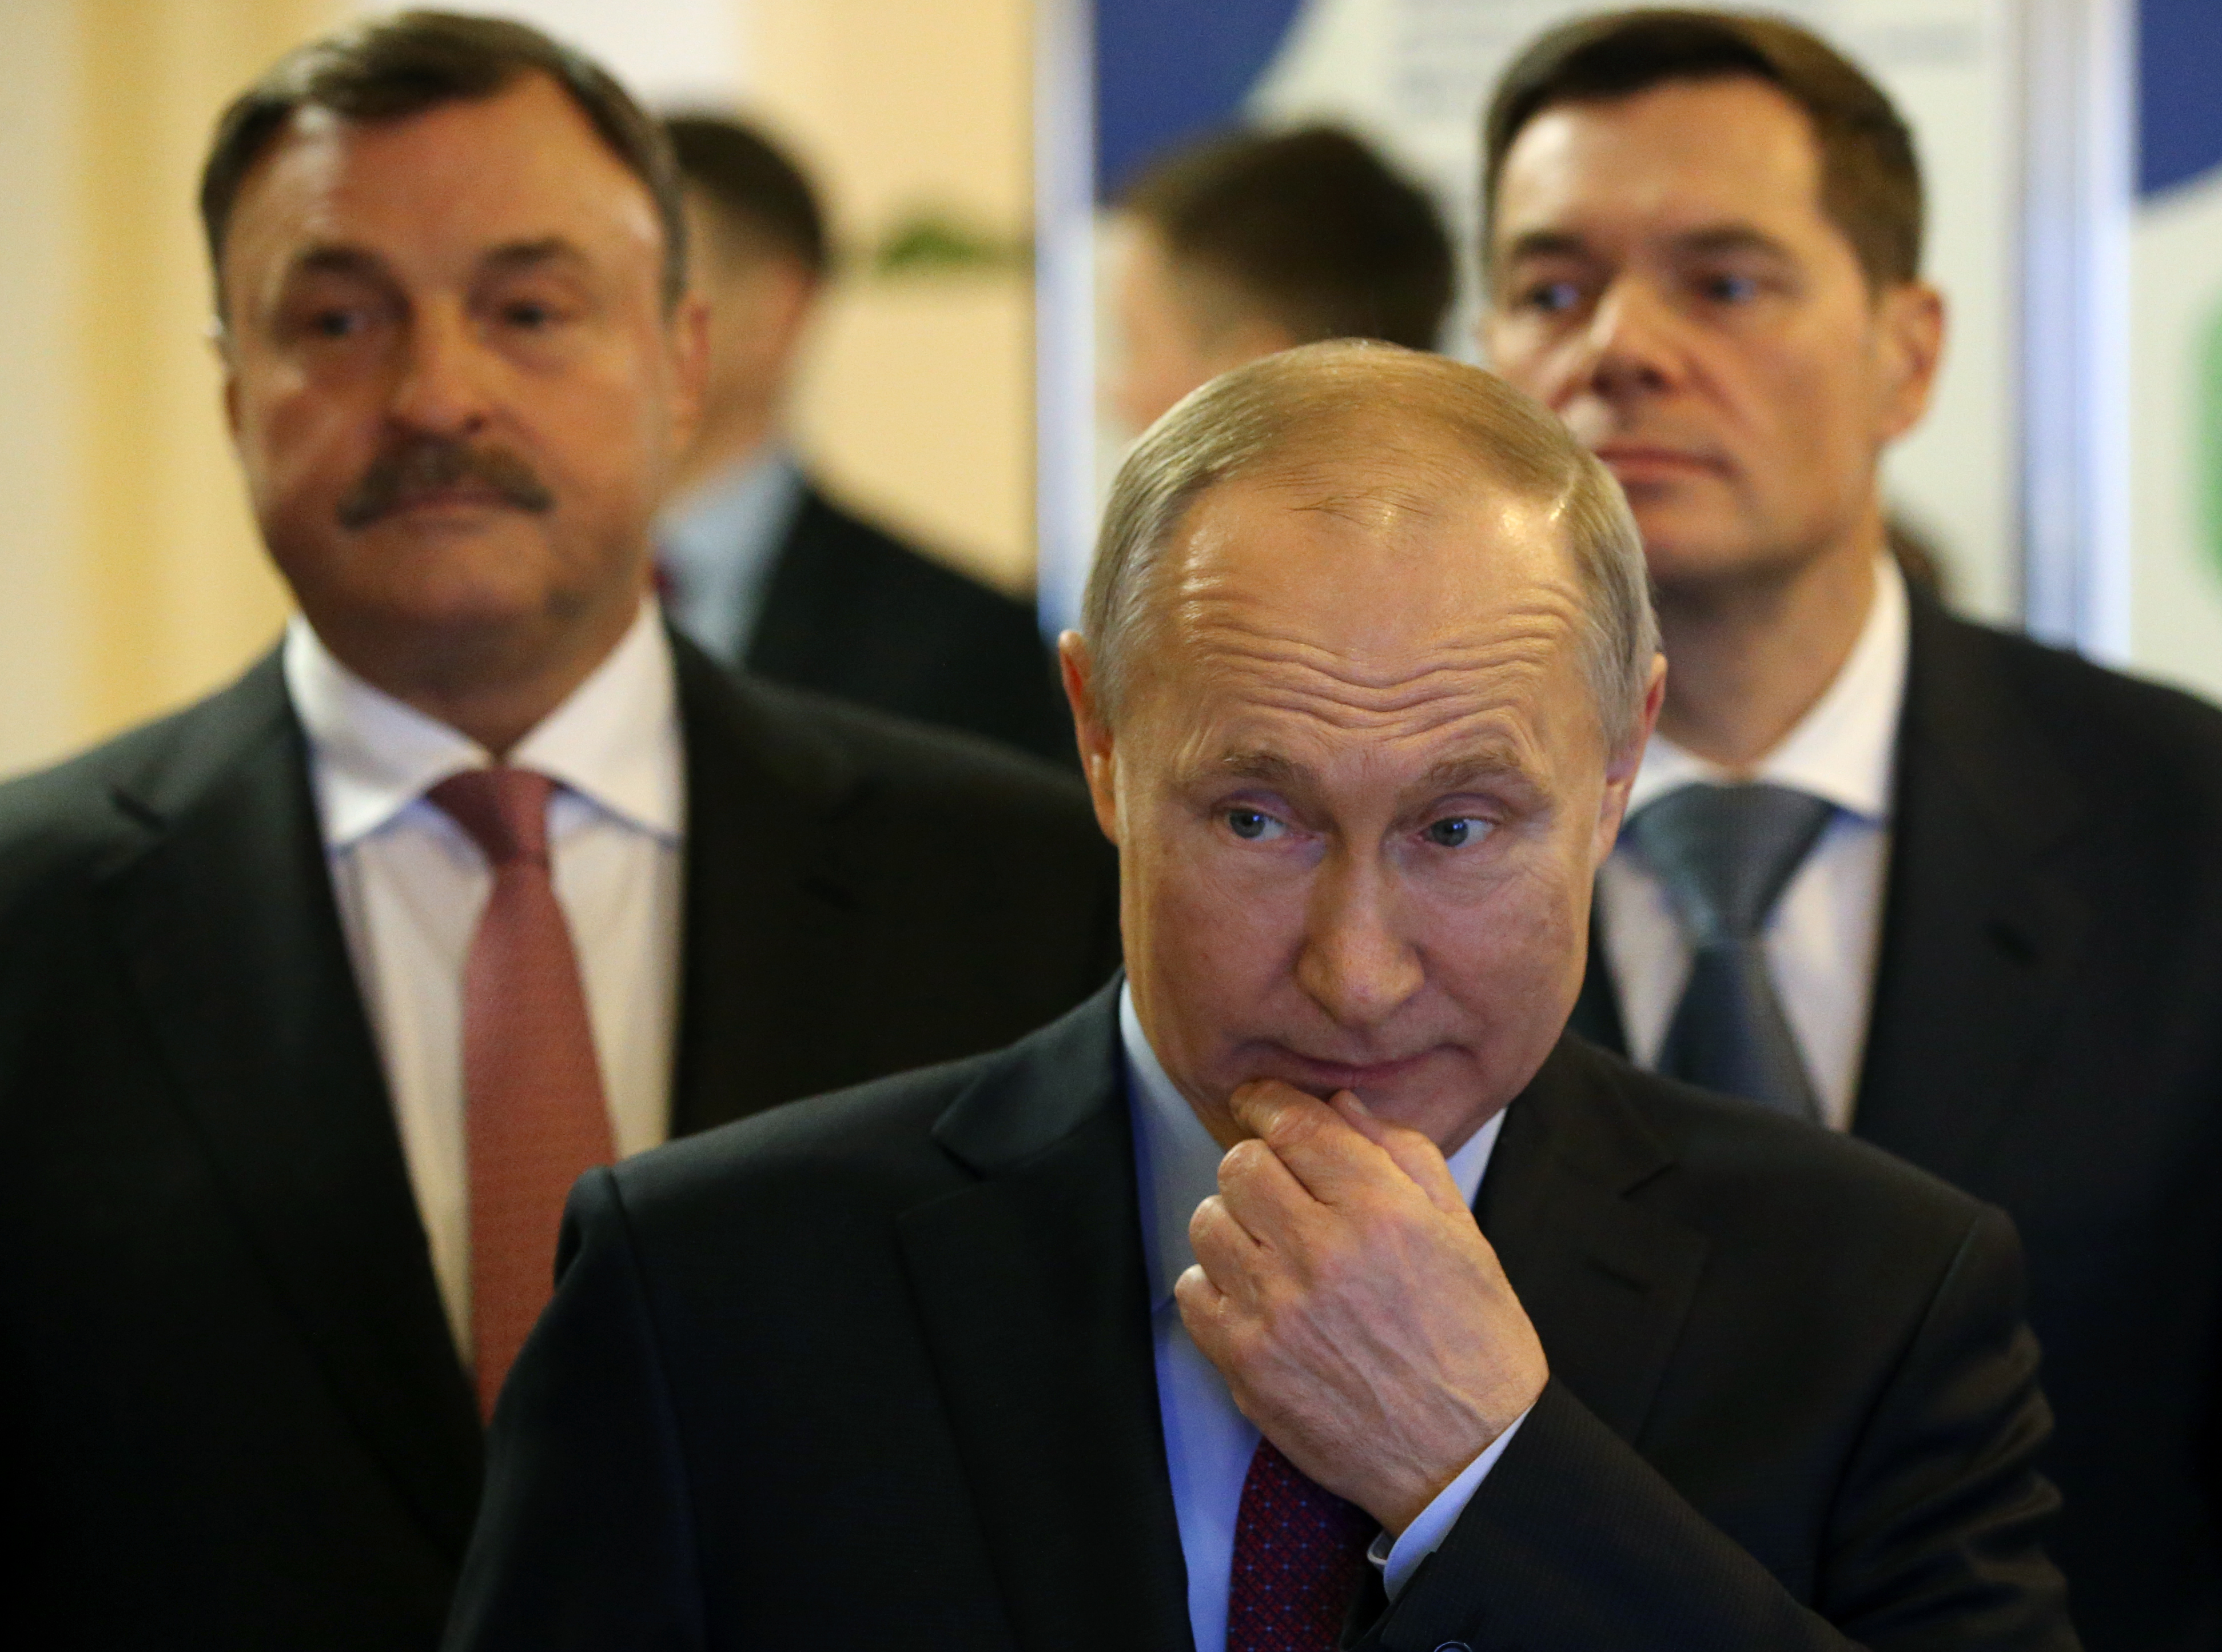 Die Yacht wurde mit dem russischen Milliardär Andrey Guryev (links) in Verbindung gebracht, hier abgebildet mit Wladimir Putin (Mitte).